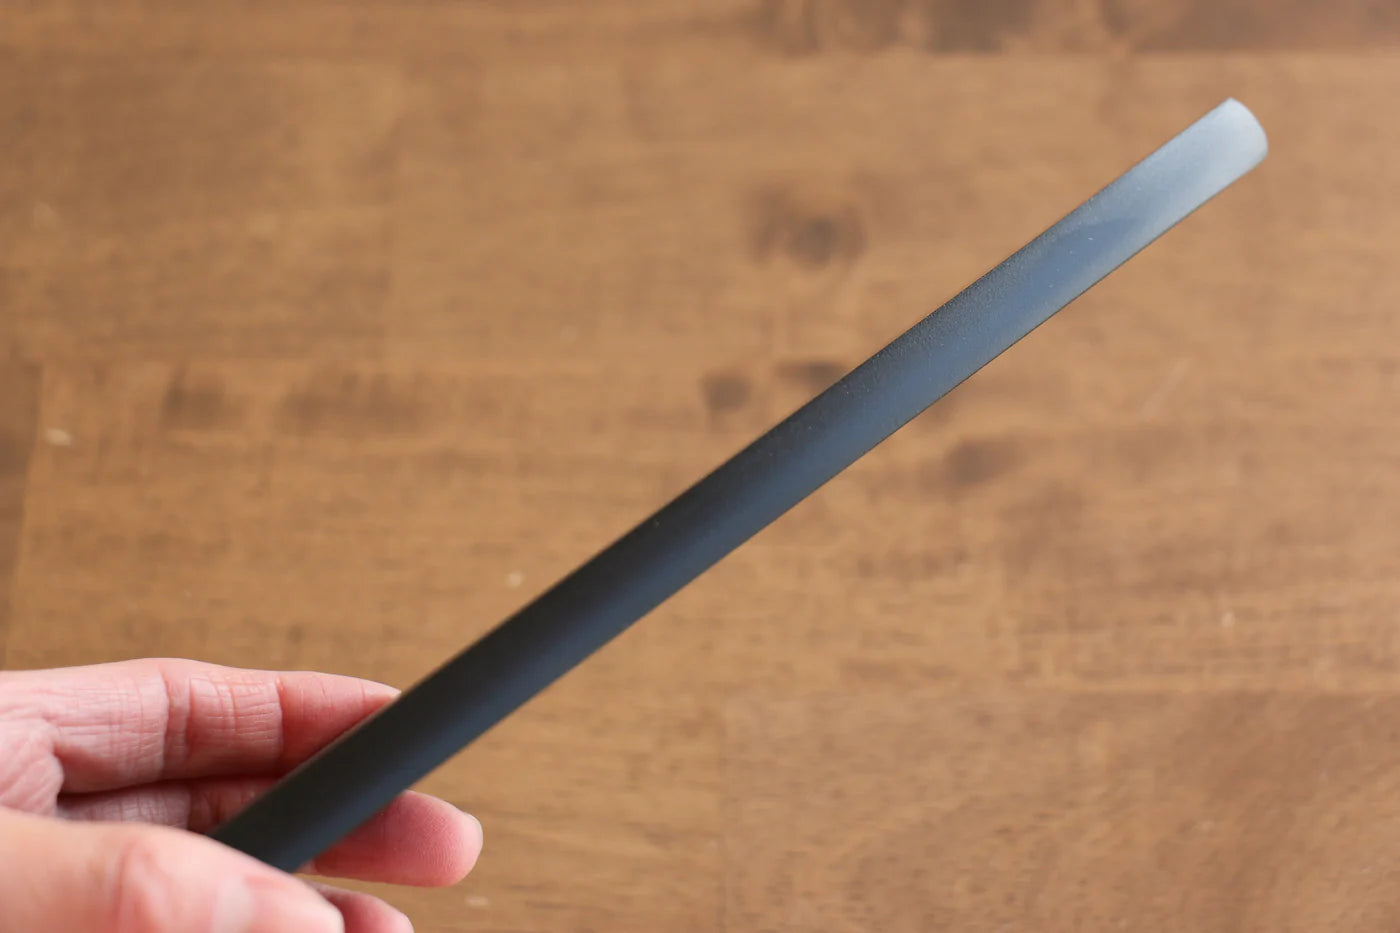 Bao dao gỗ Mộc Lan Dao đa năng Bunka Chốt gỗ ép 180mm Kaneko